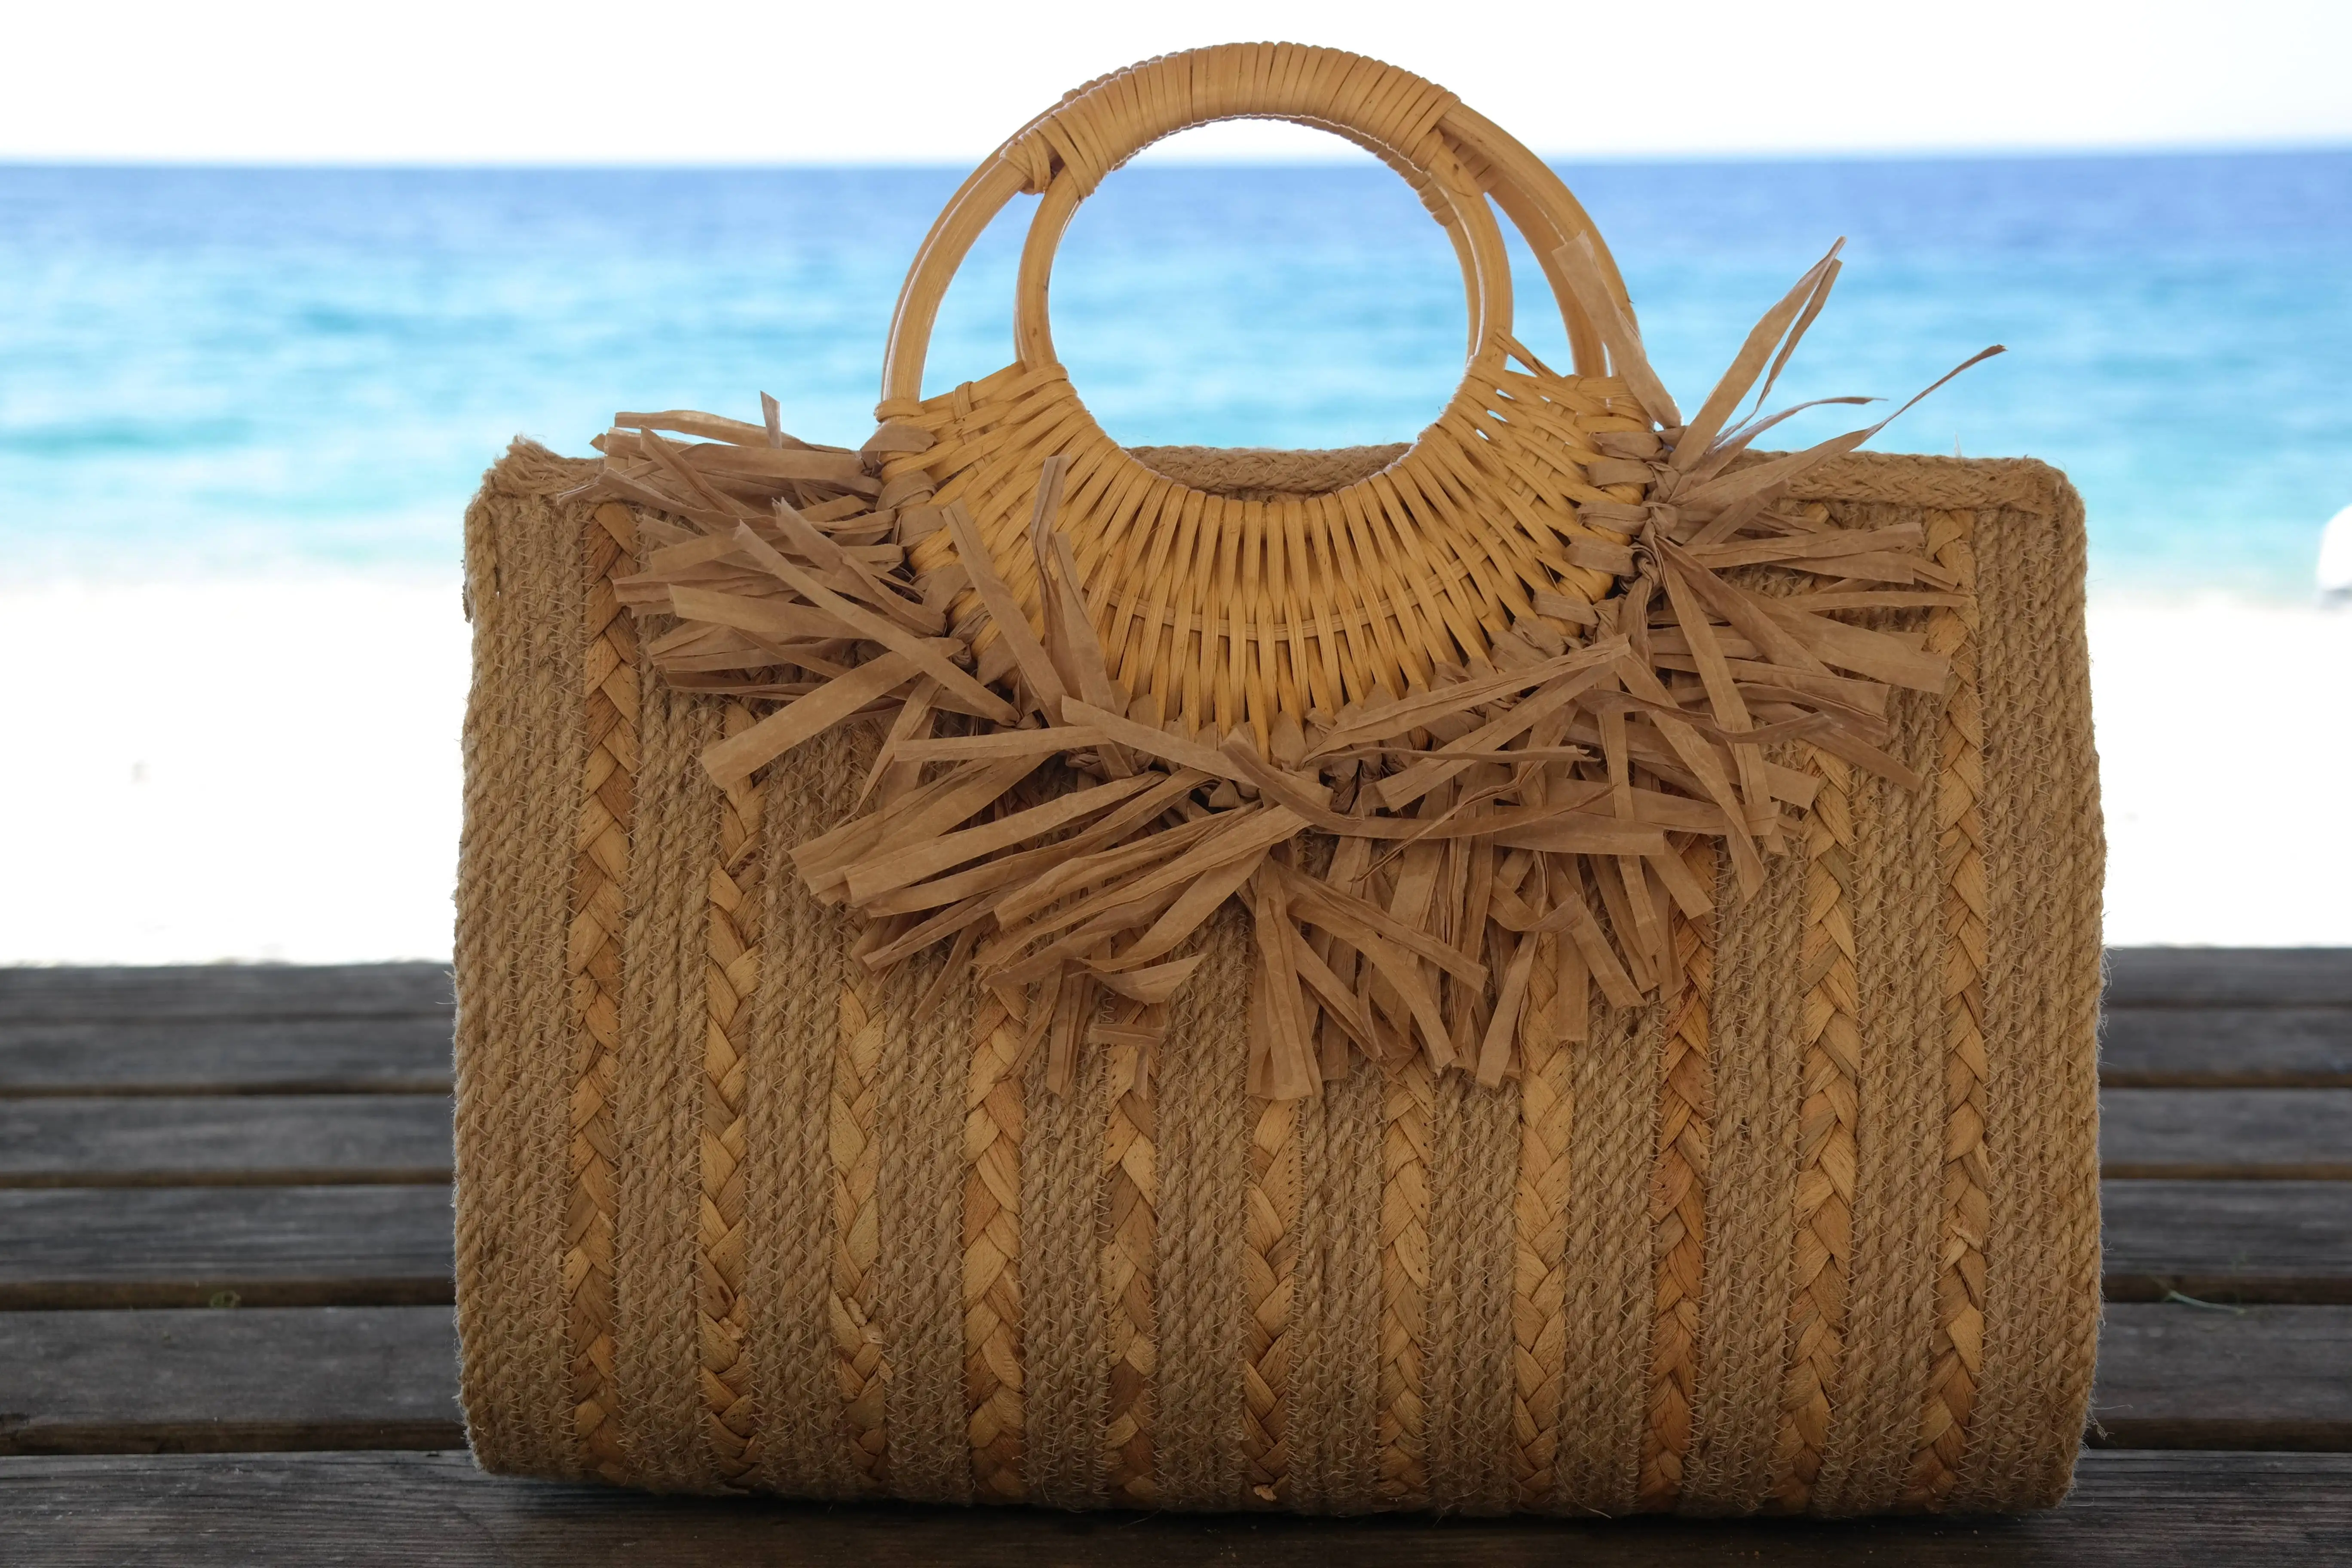 Handmade women's handbags are designed for you.